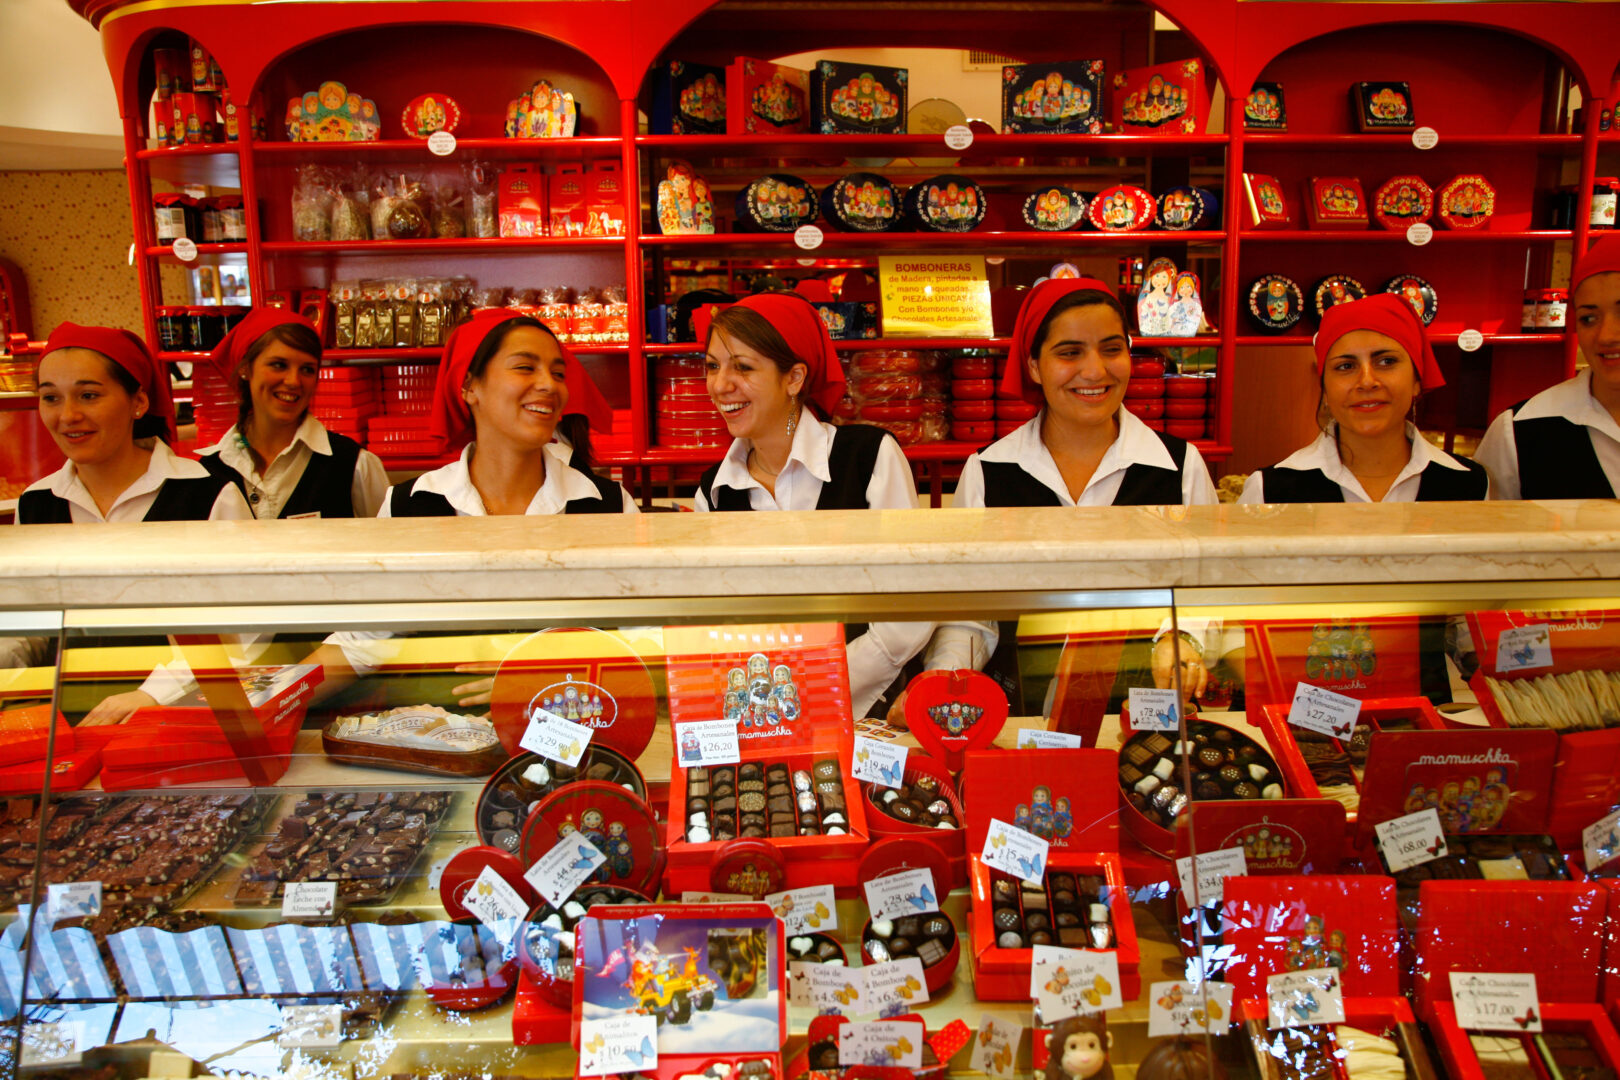 עיר השוקולד בארגנטינה – עם חנויות המחלקות שוקולד בחינם